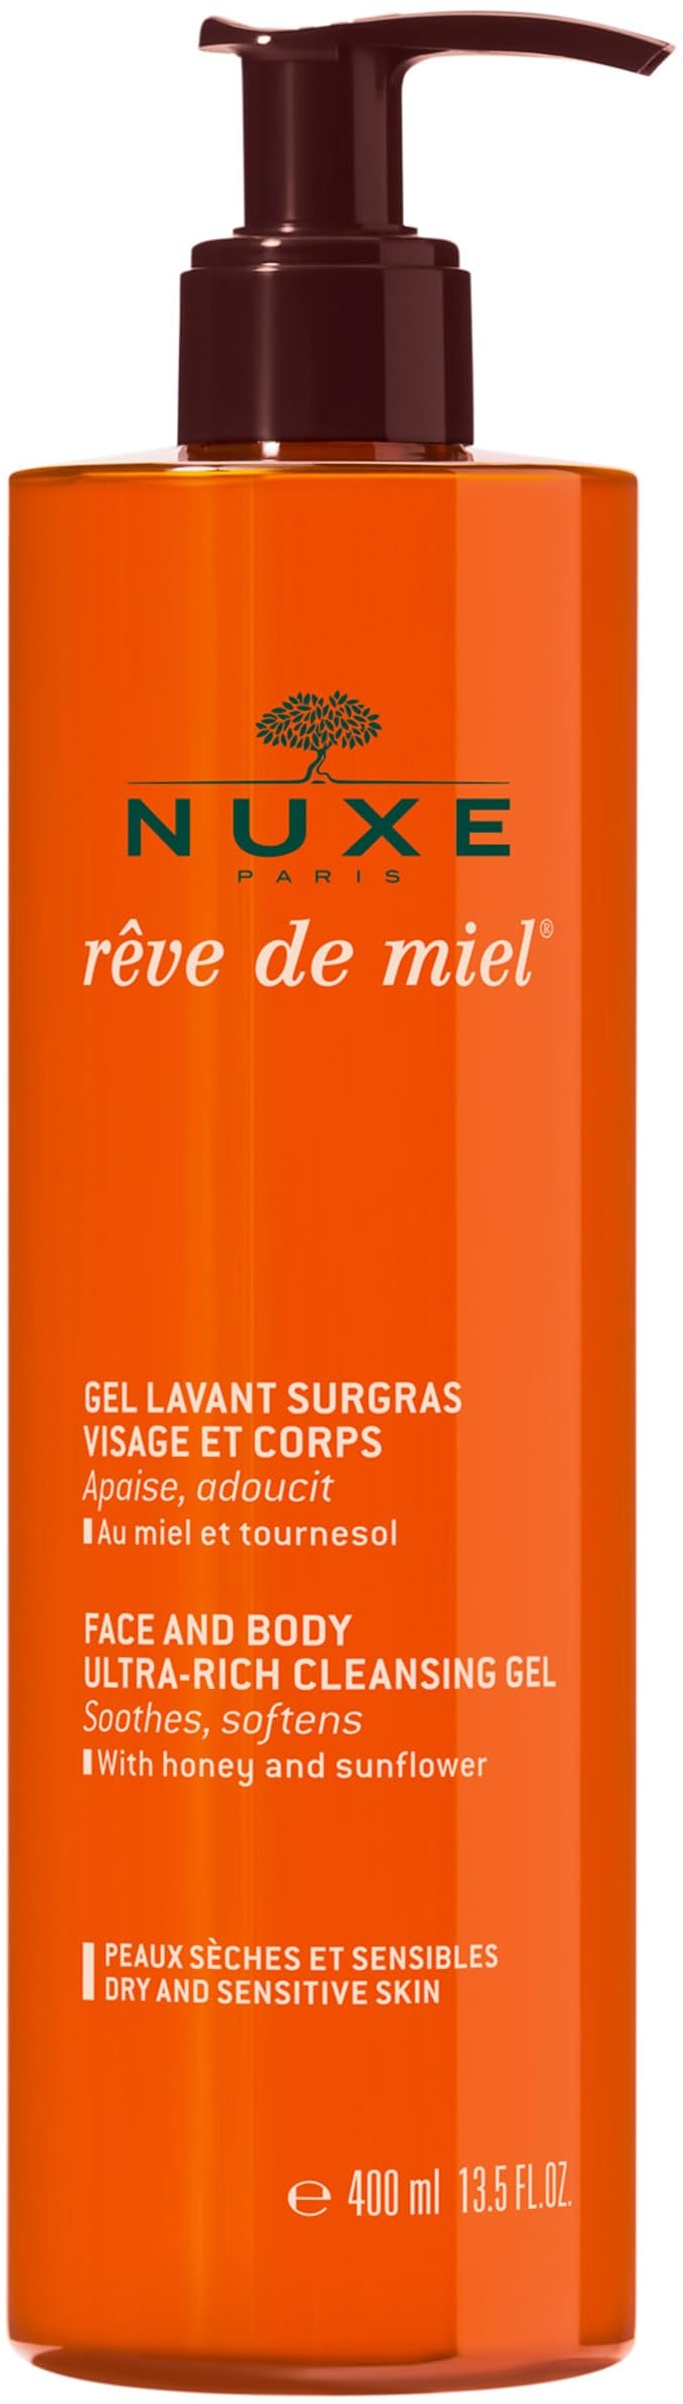 Nuxe Rêve de Miel –Reinigungsgel für trockene Haut – Gesichts- und Körperpflege (1 x 400 ml)